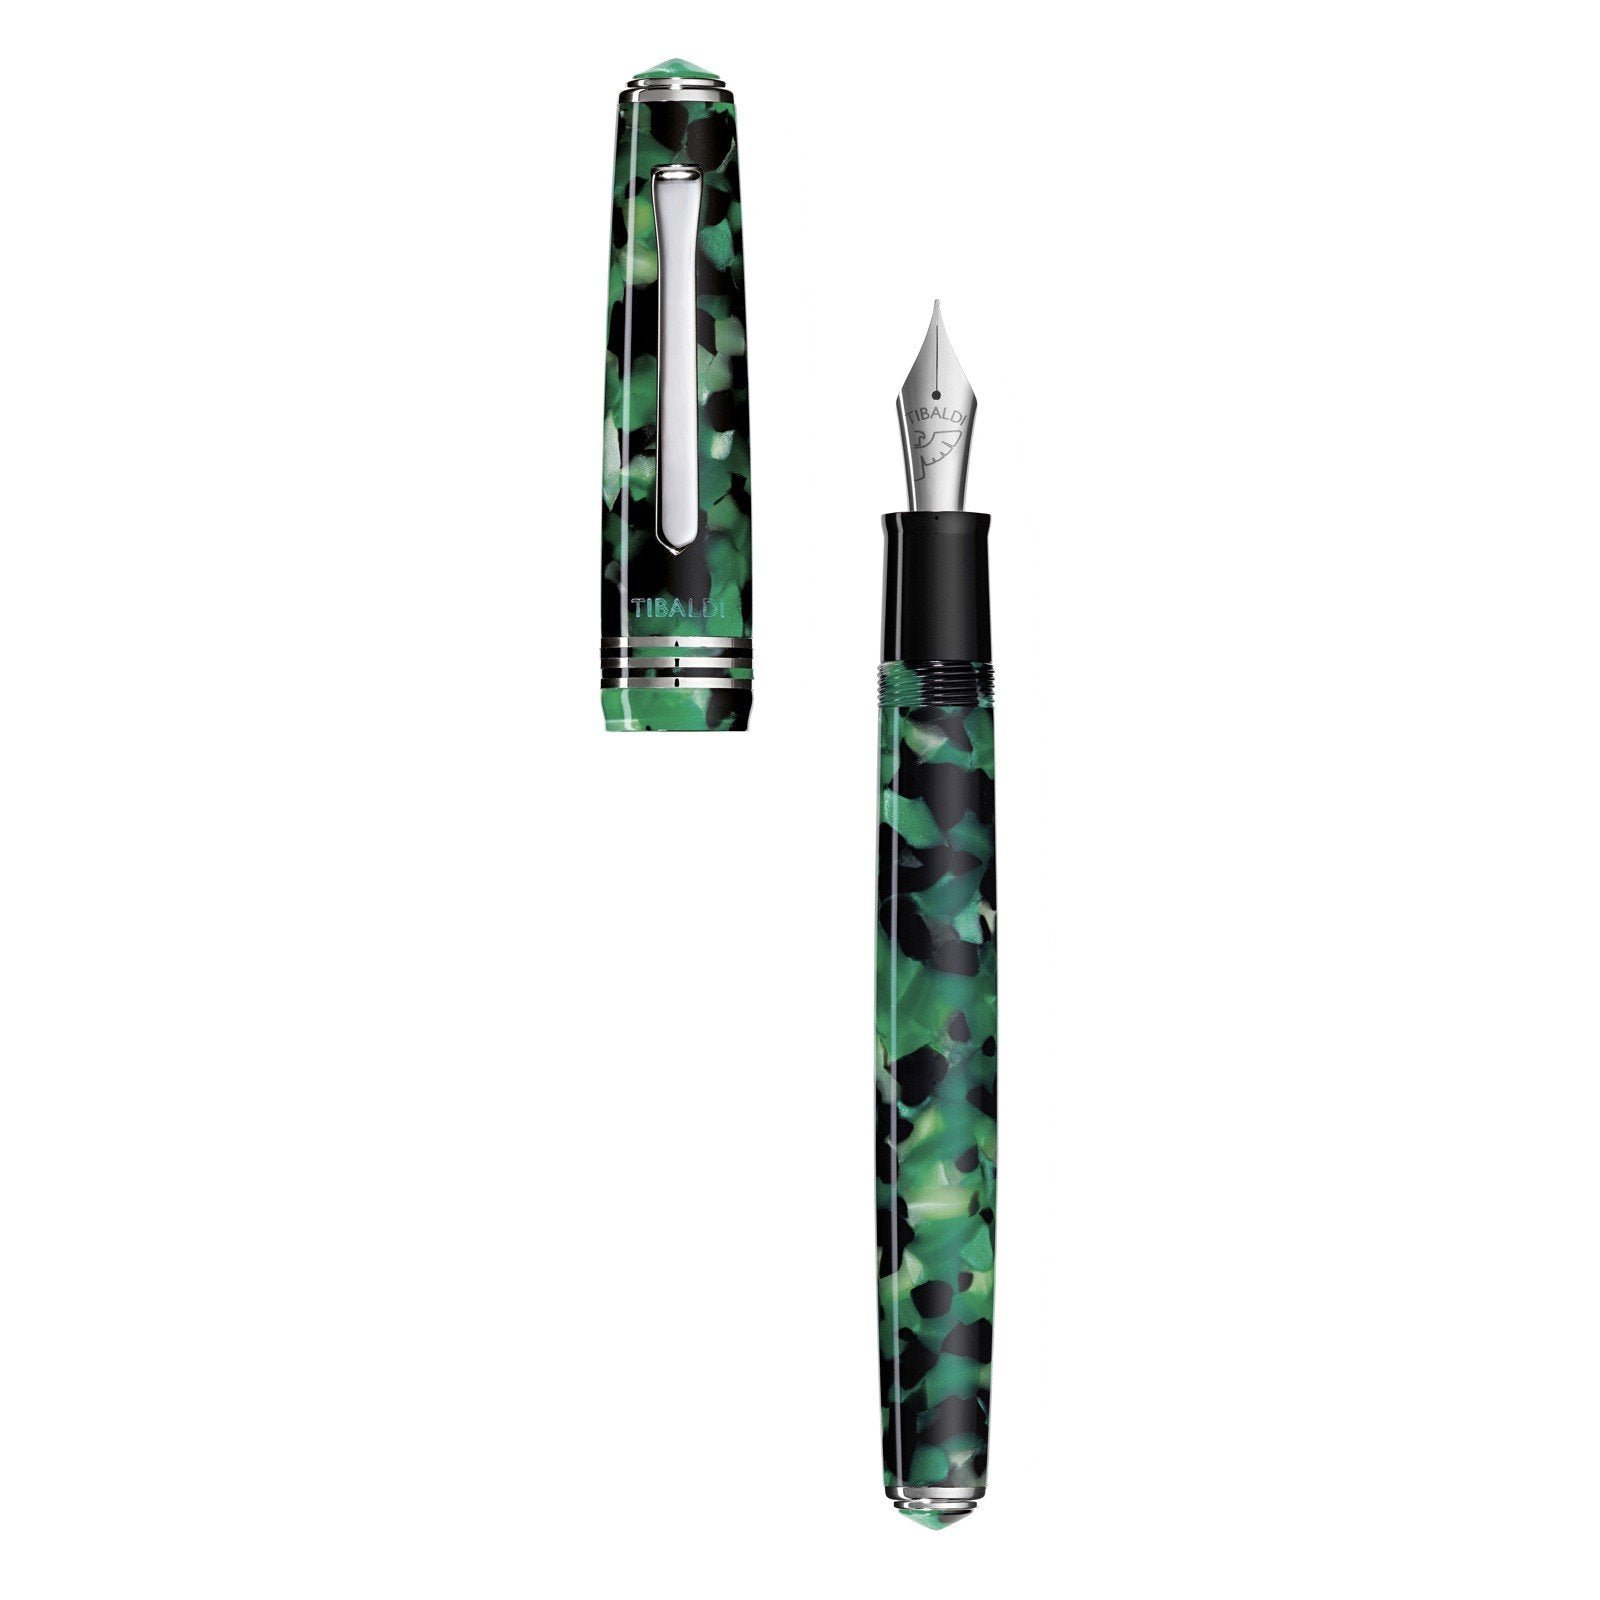 Tibaldi stilografica N60 in resina verde smeraldo punta media N60-489_FP-M - Gioielleria Capodagli